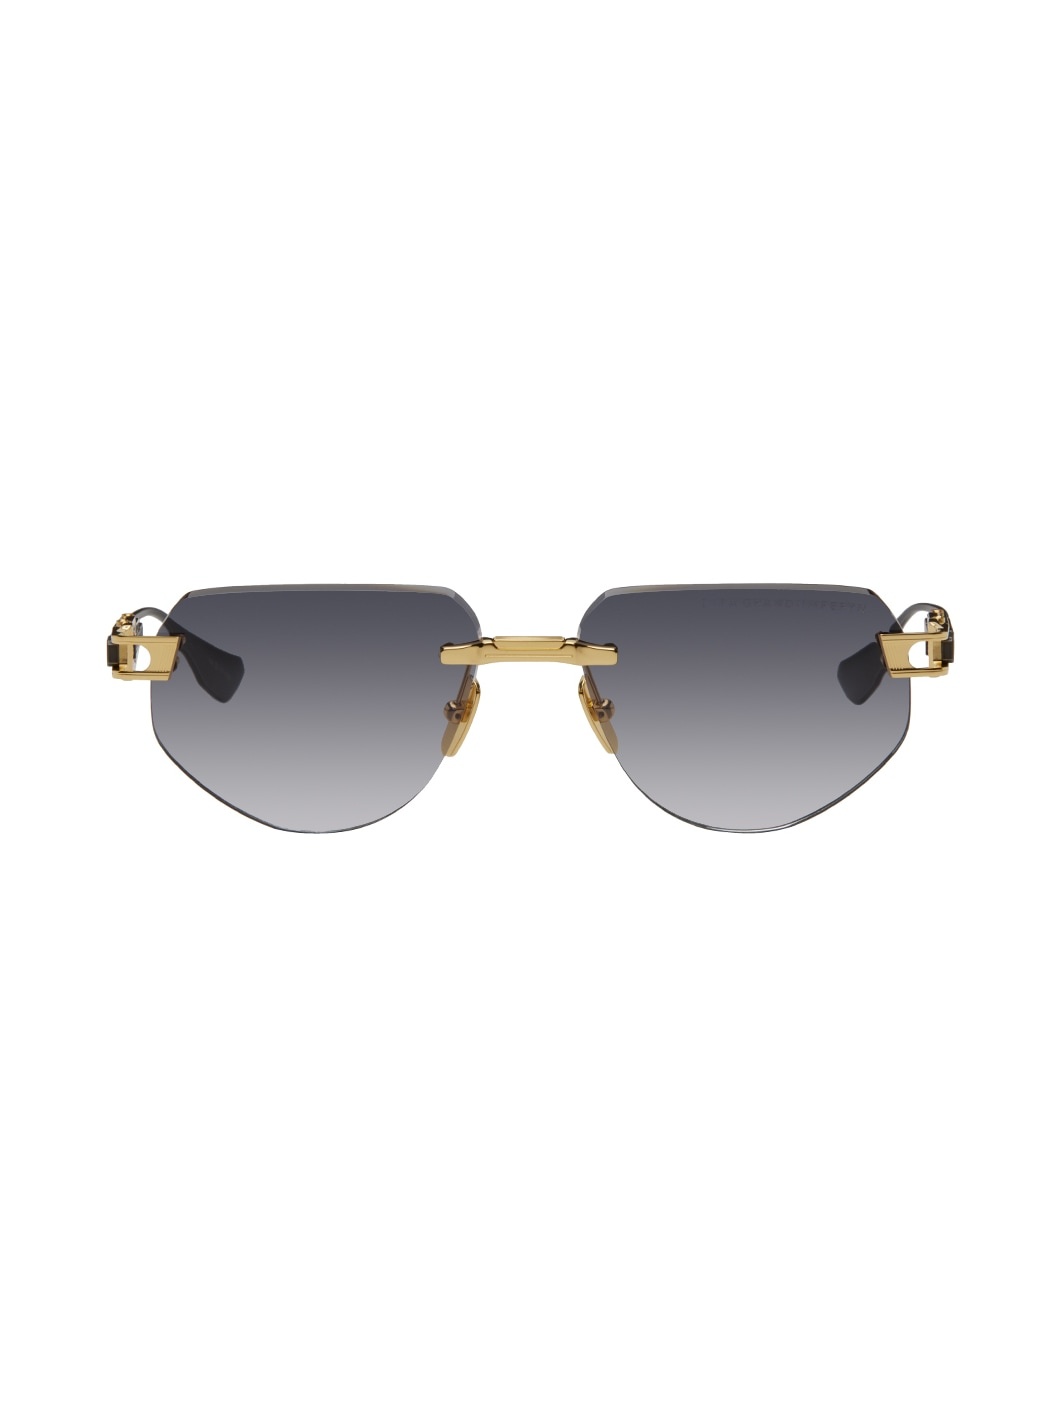 Gold Grand-Imperyn Sunglasses - 1